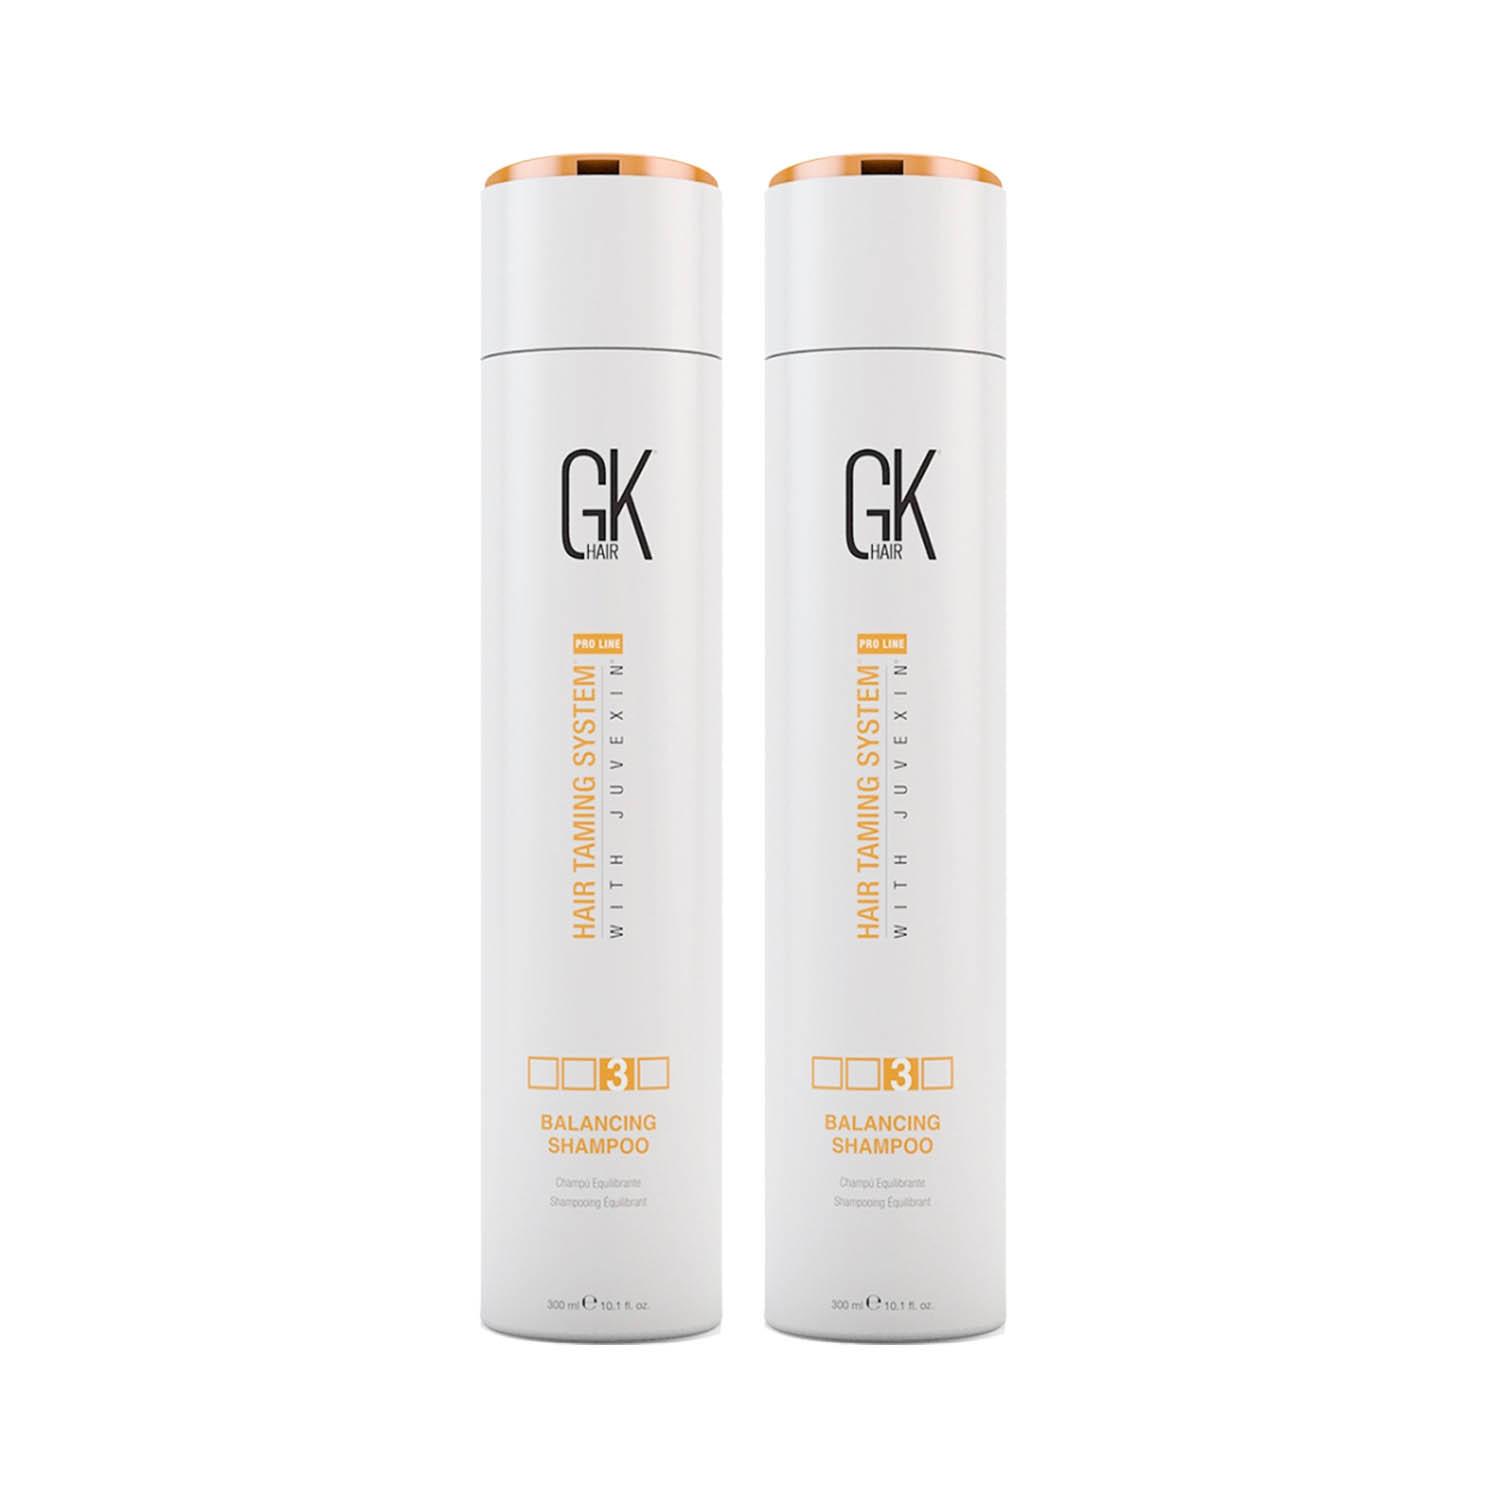 GK Hair | GK Hair Balancing Shampoo 300ml Pack of 2